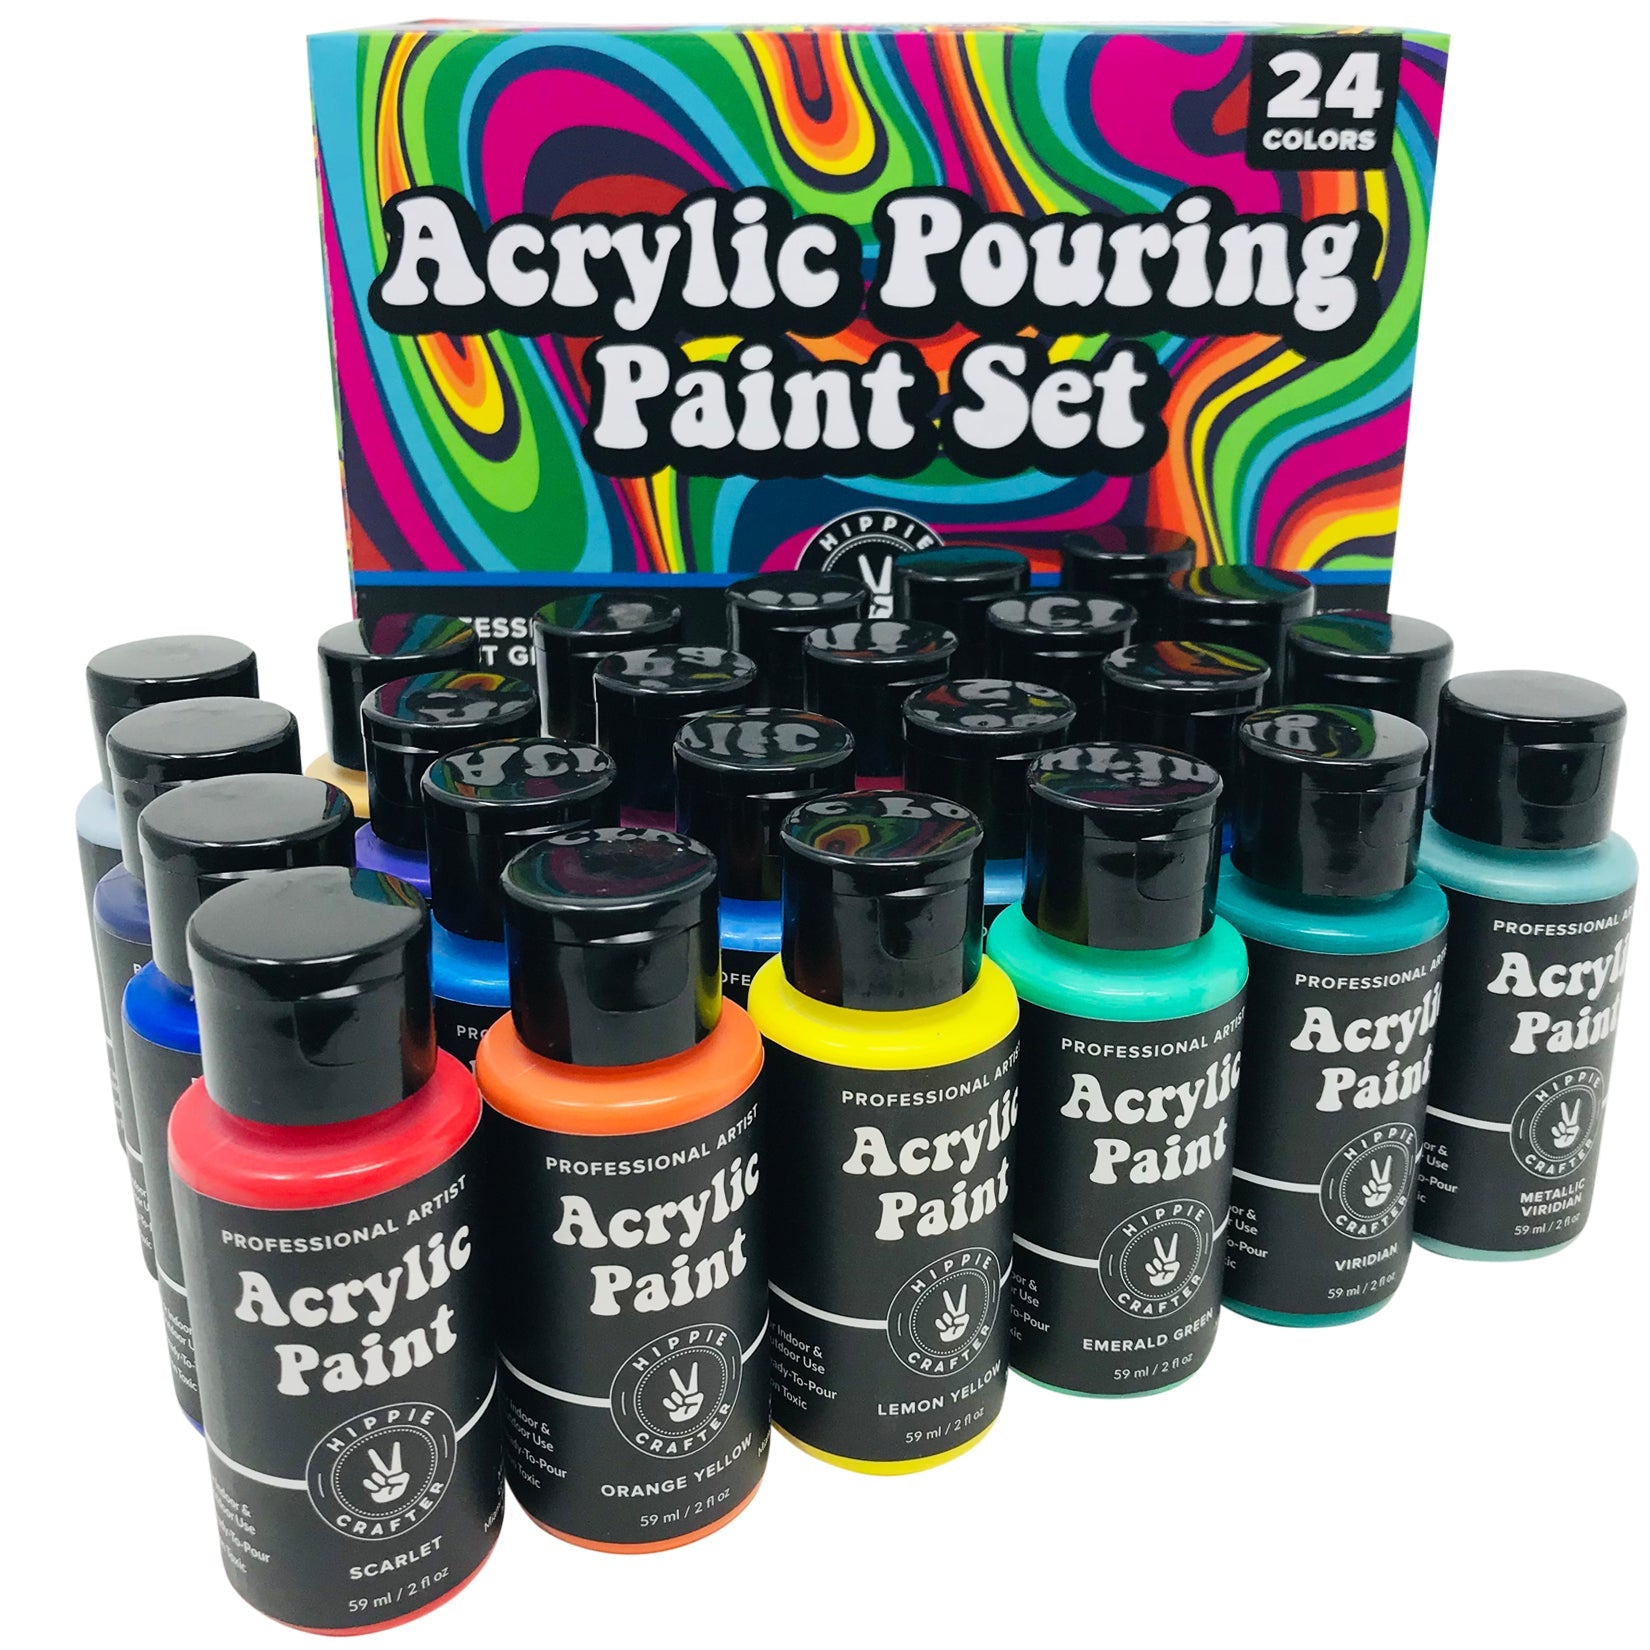 Art & Craft Paint - Acrylic Pouring Paint 24 Color Set